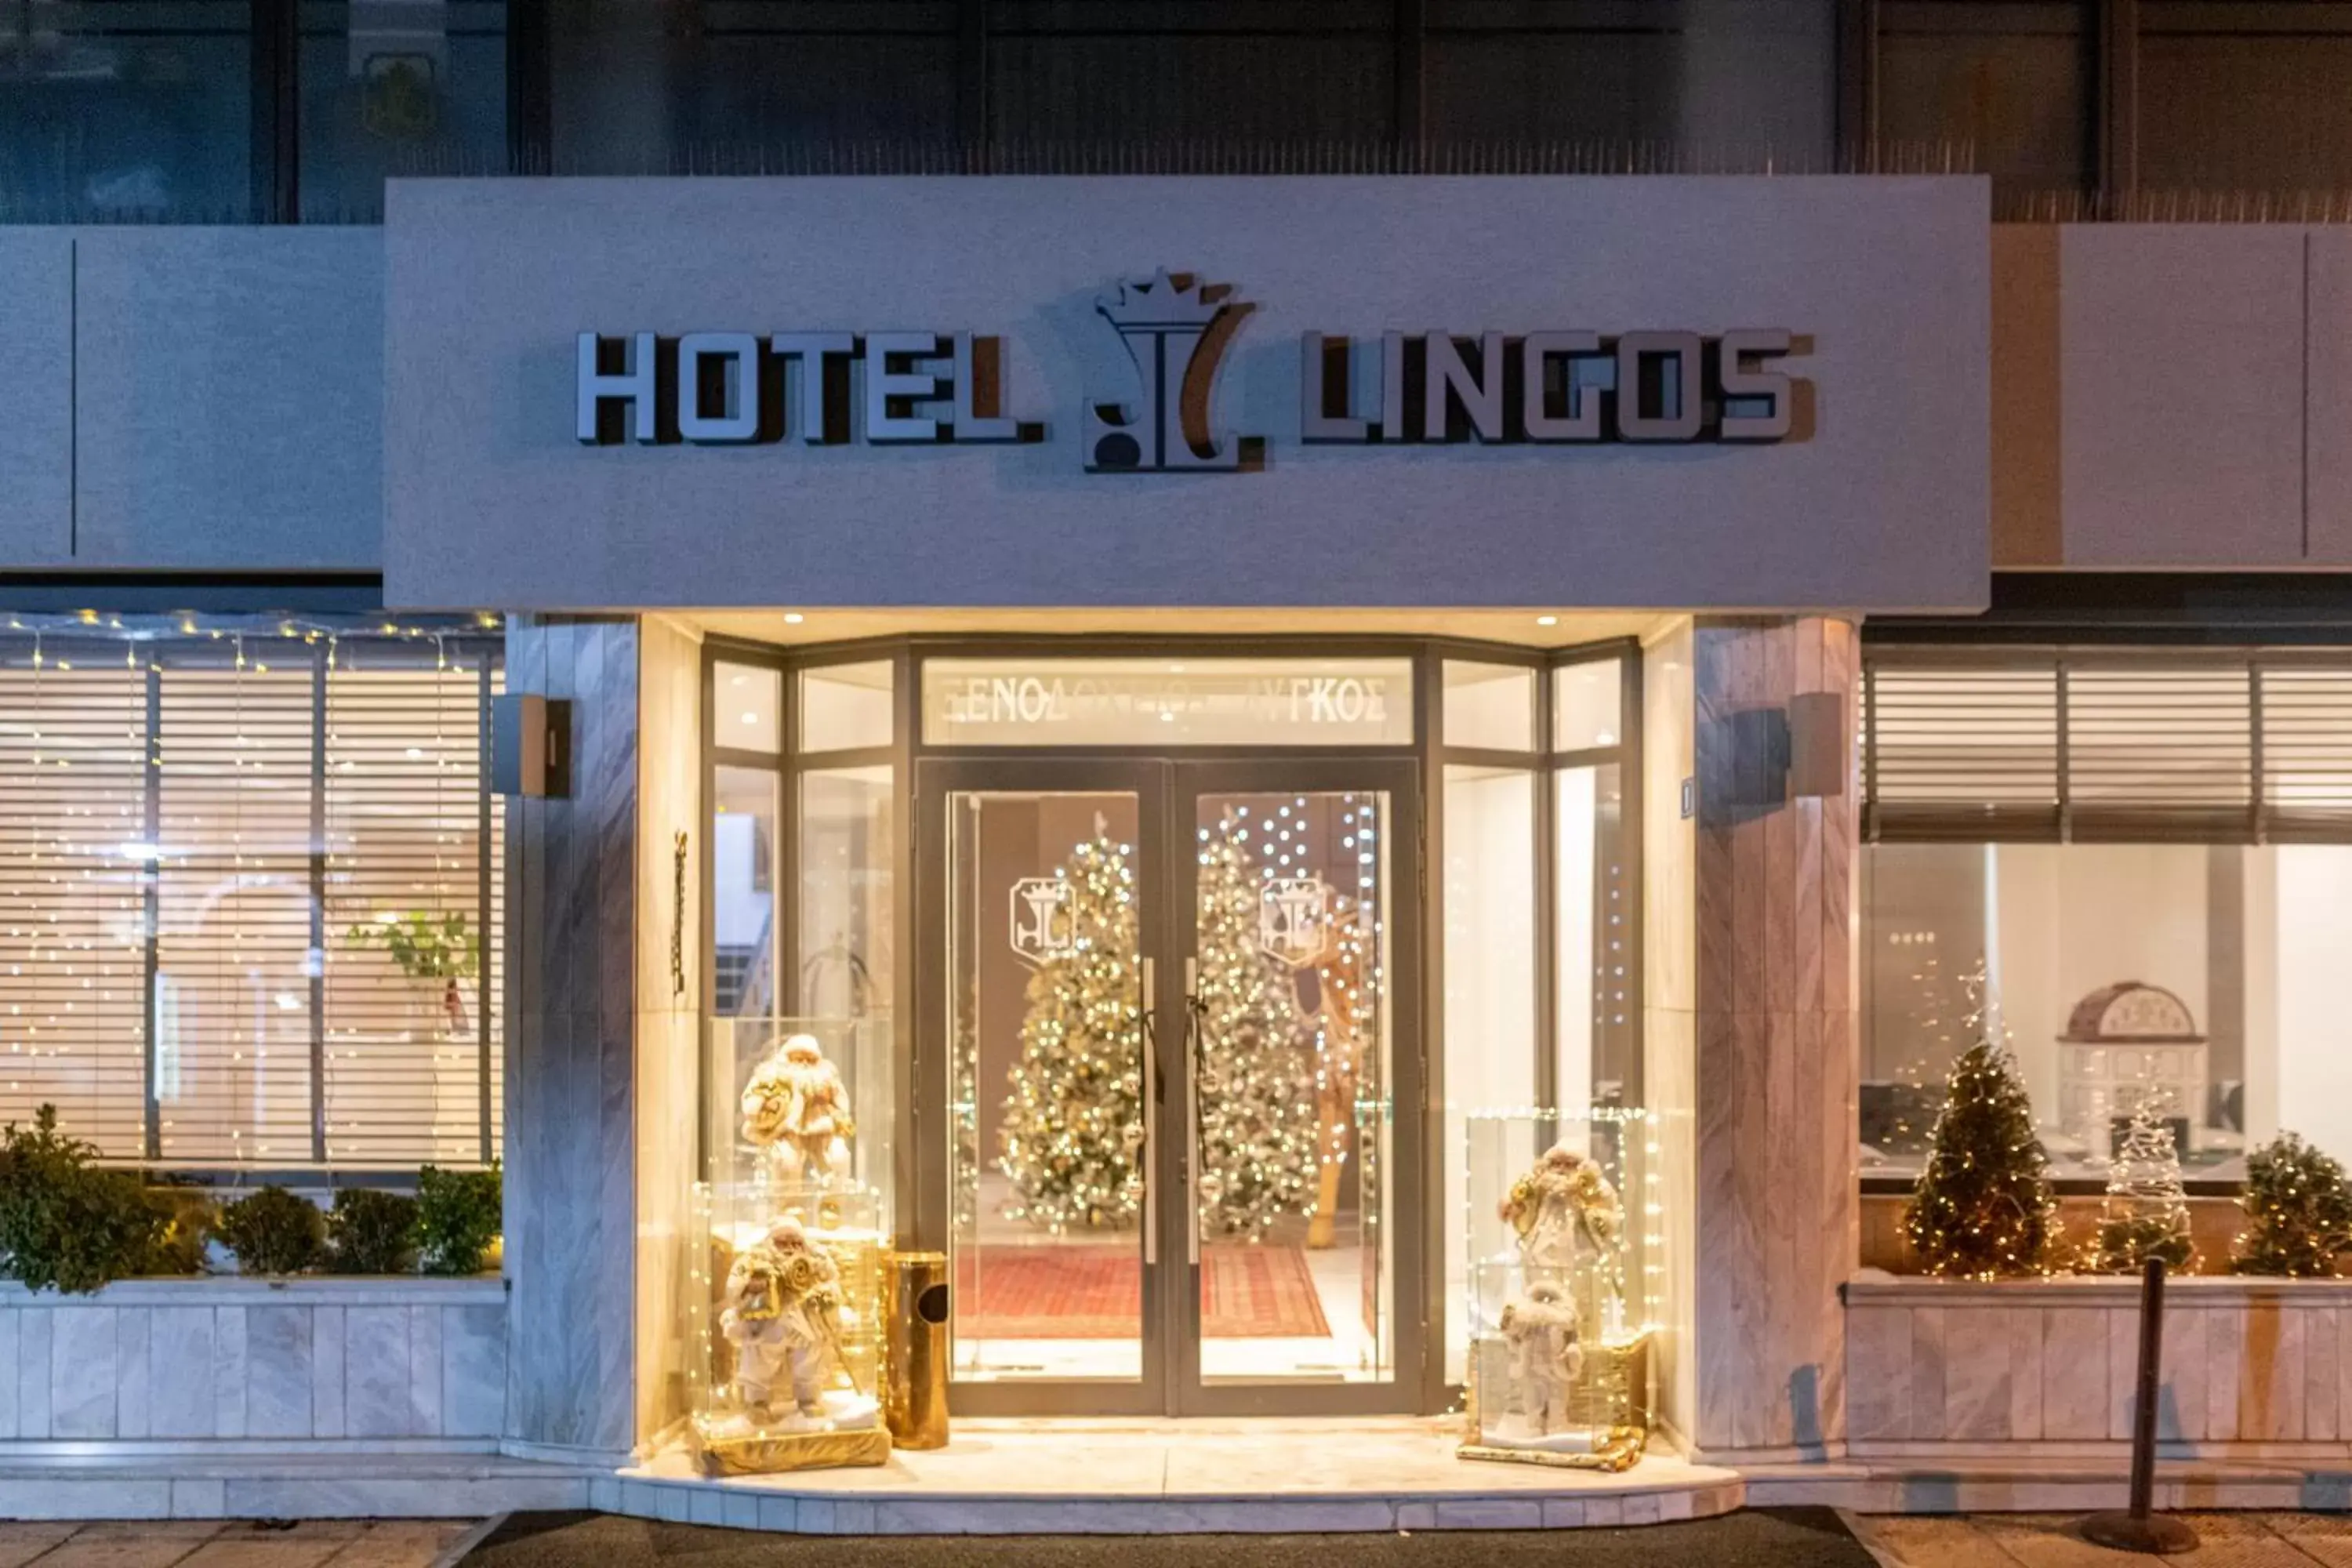 Lingos Hotel